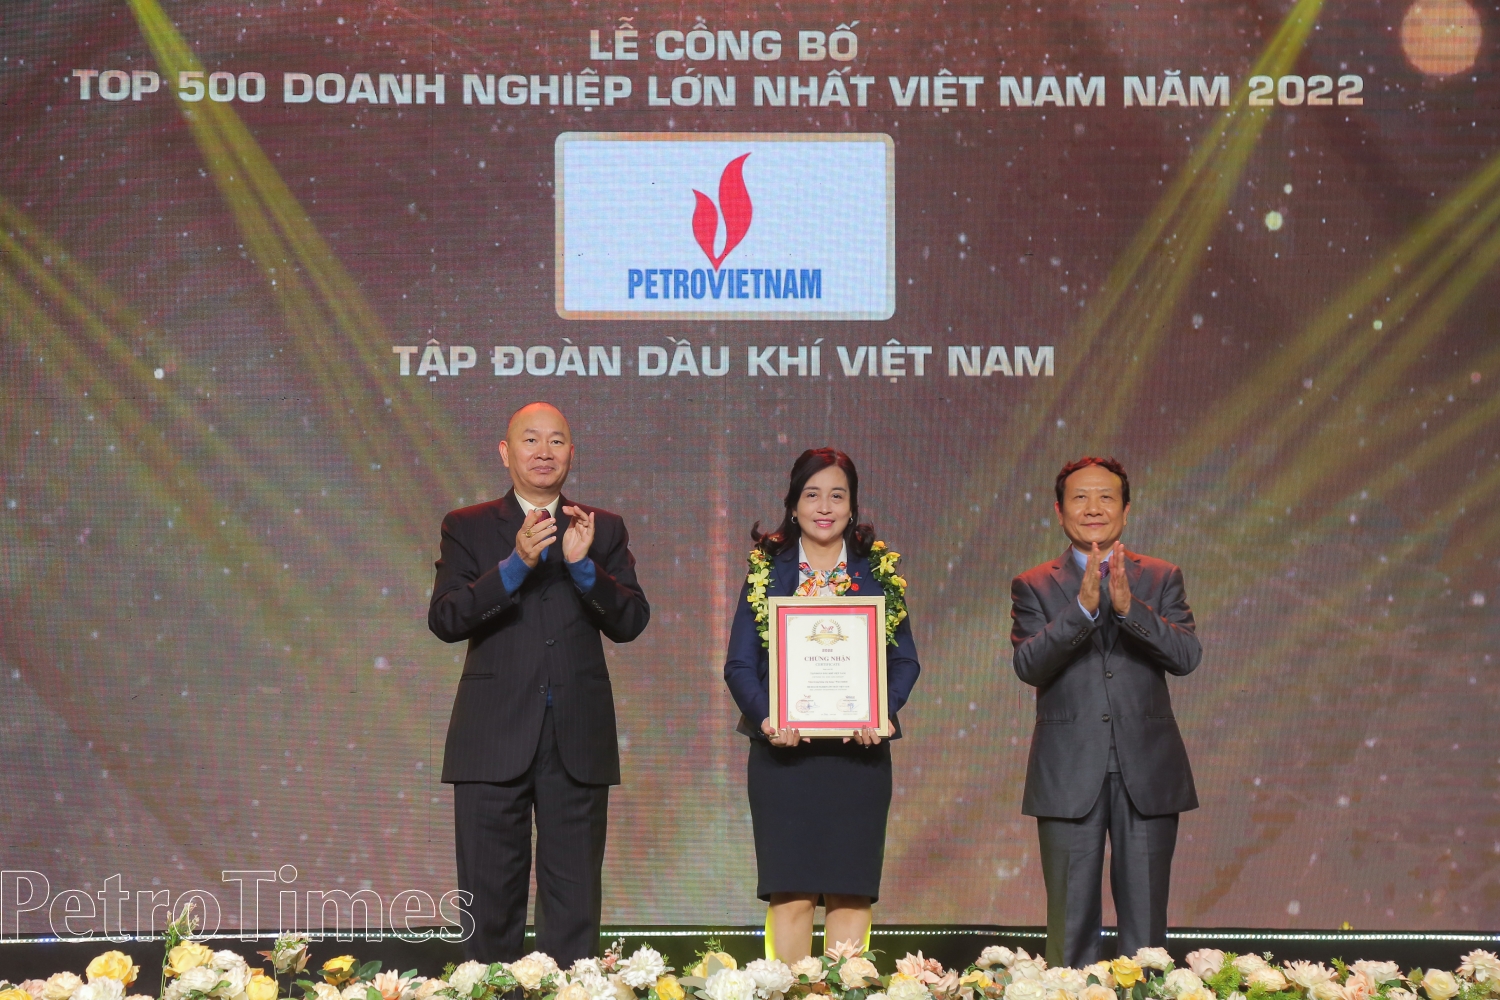 Thiết lập nhiều kỷ lục trong năm 2022, Petrovietnam tiếp tục khẳng định vị thế trong Top 500 doanh nghiệp lớn nhất Việt Nam